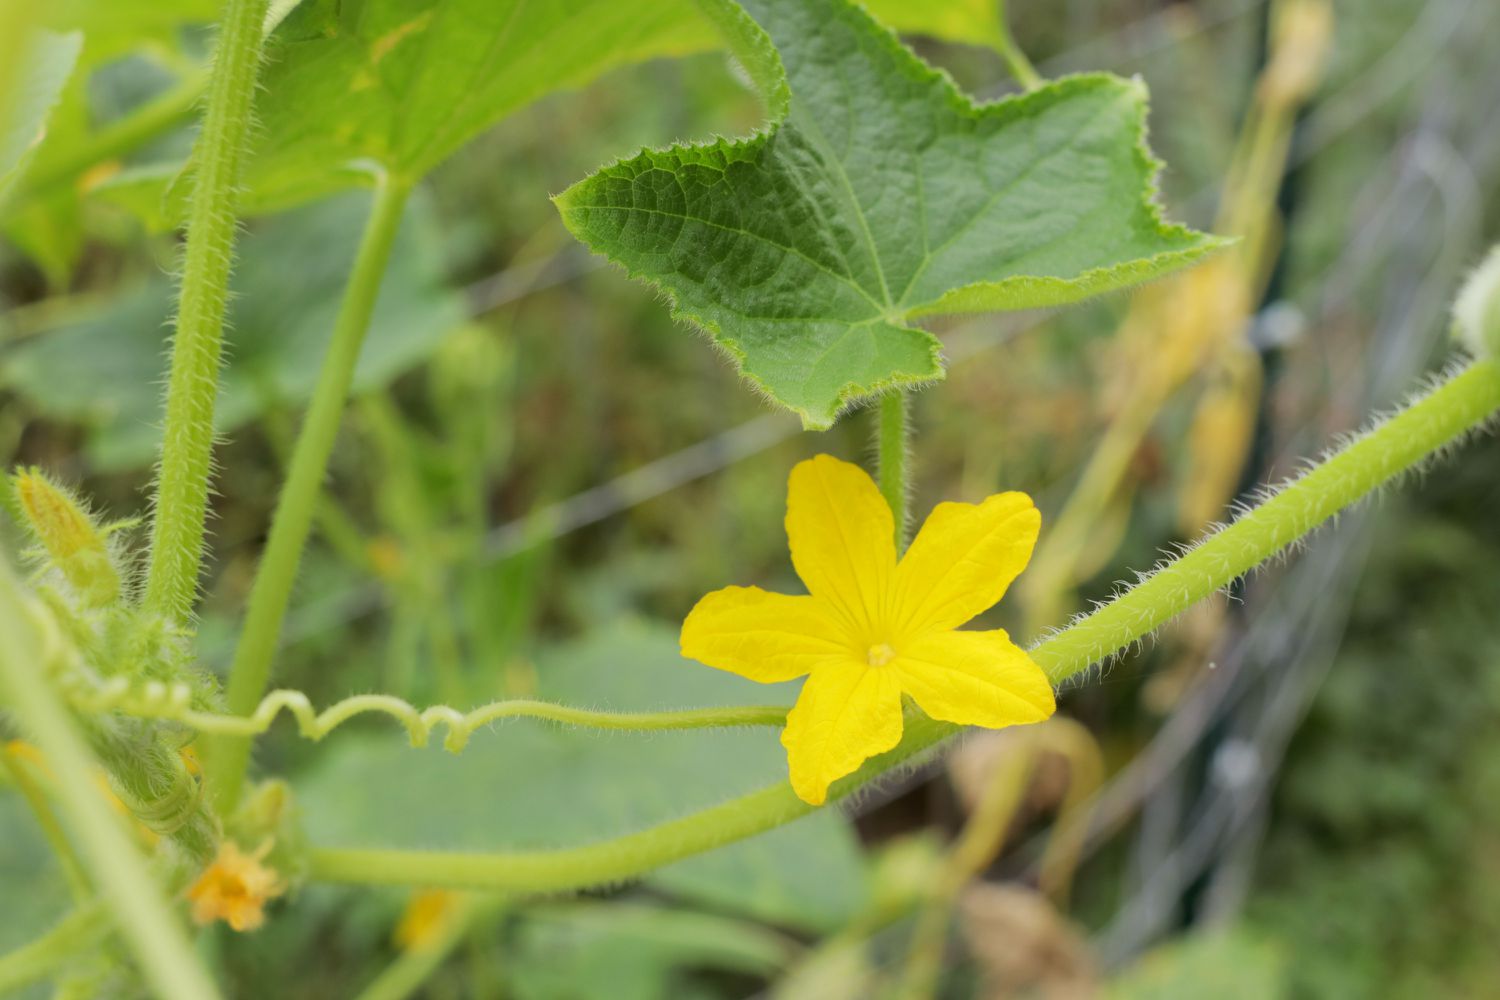 Zitronengurkenpflanze mit kleiner gelber Blüte und Blatt in Nahaufnahme